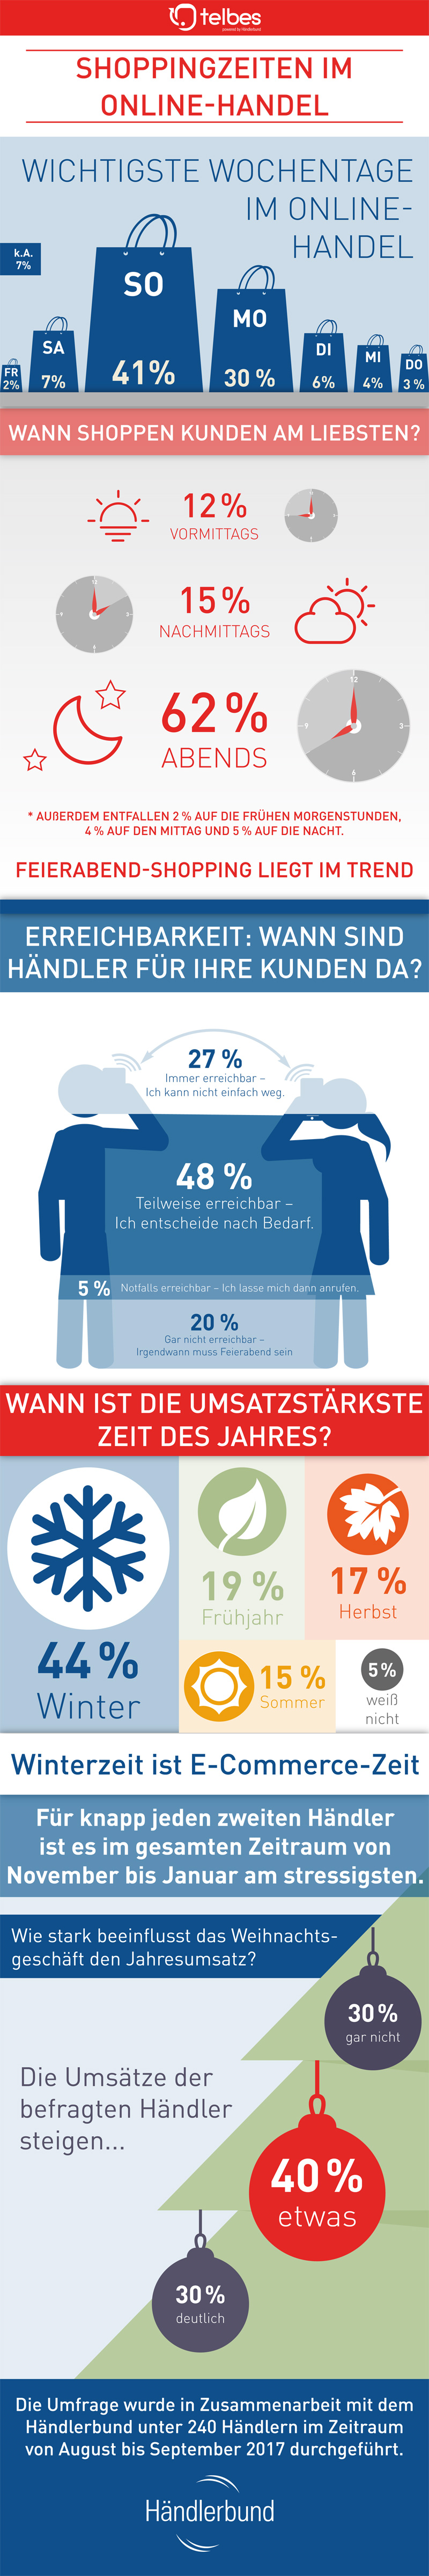 Infografik Onlineshopping Zeiten (Bild: Händlerbund)